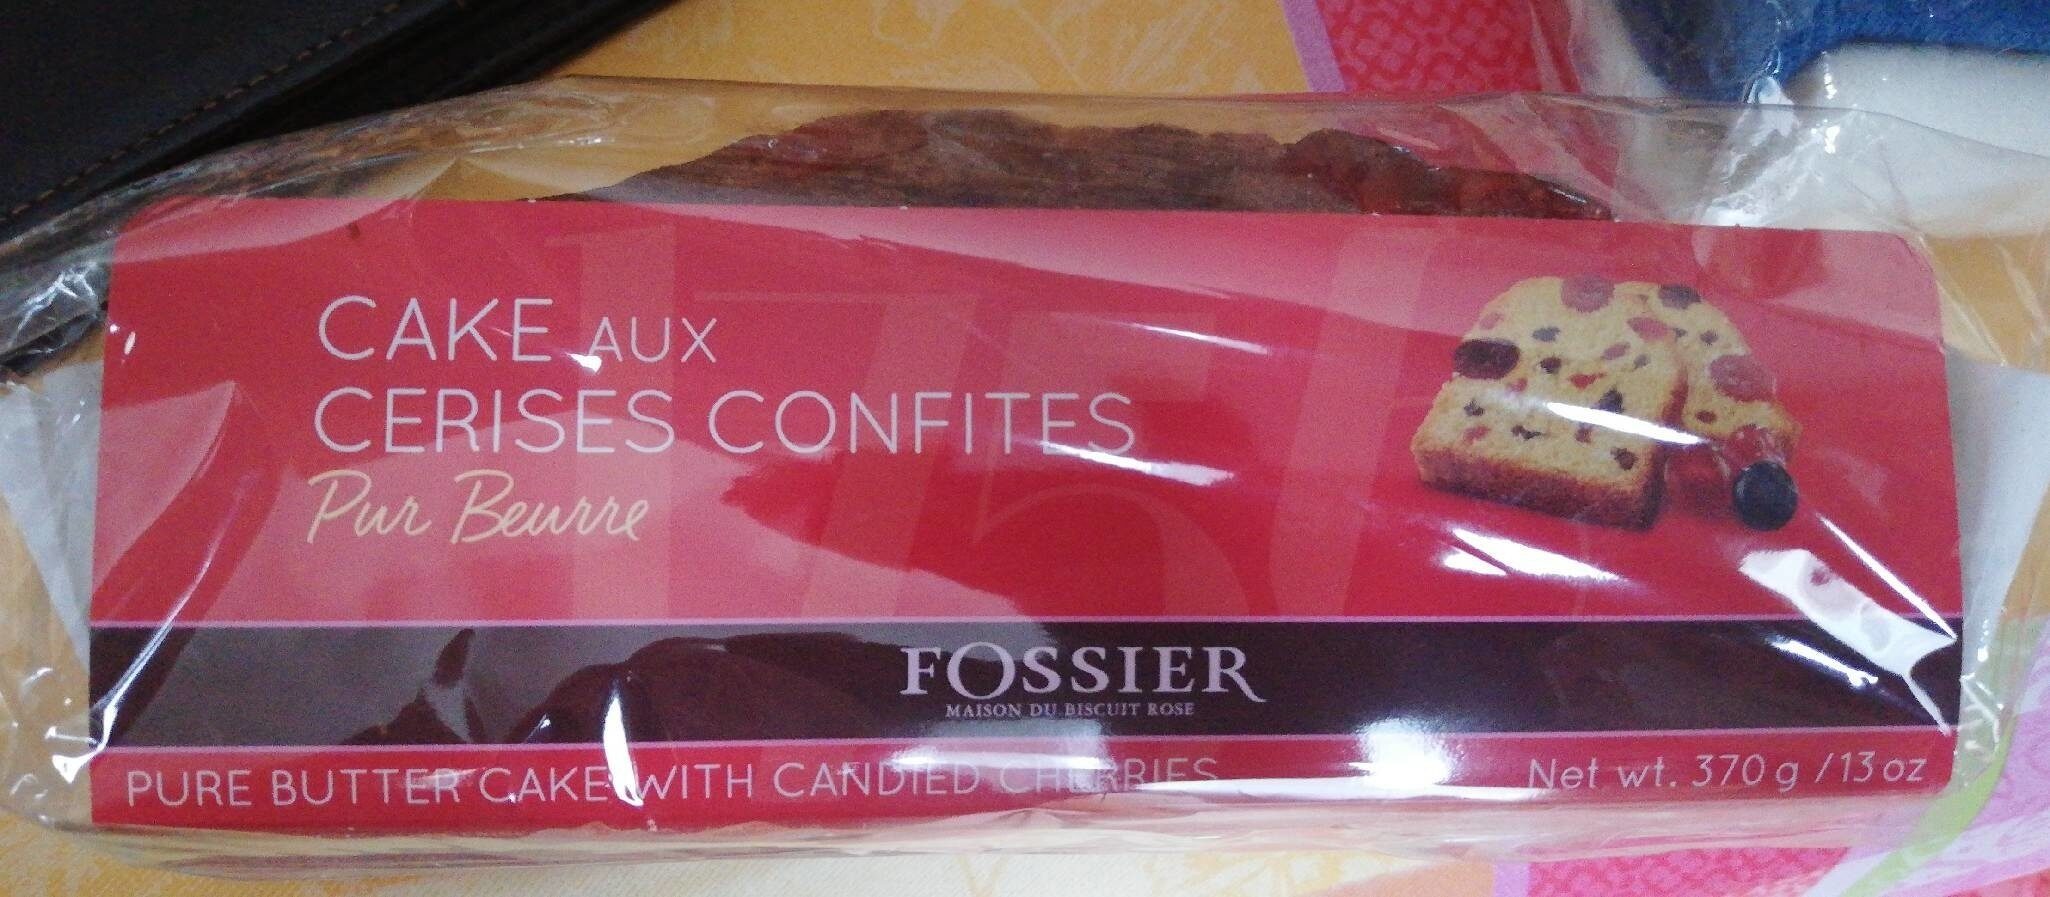 Cake aux cerises confites - Product - fr